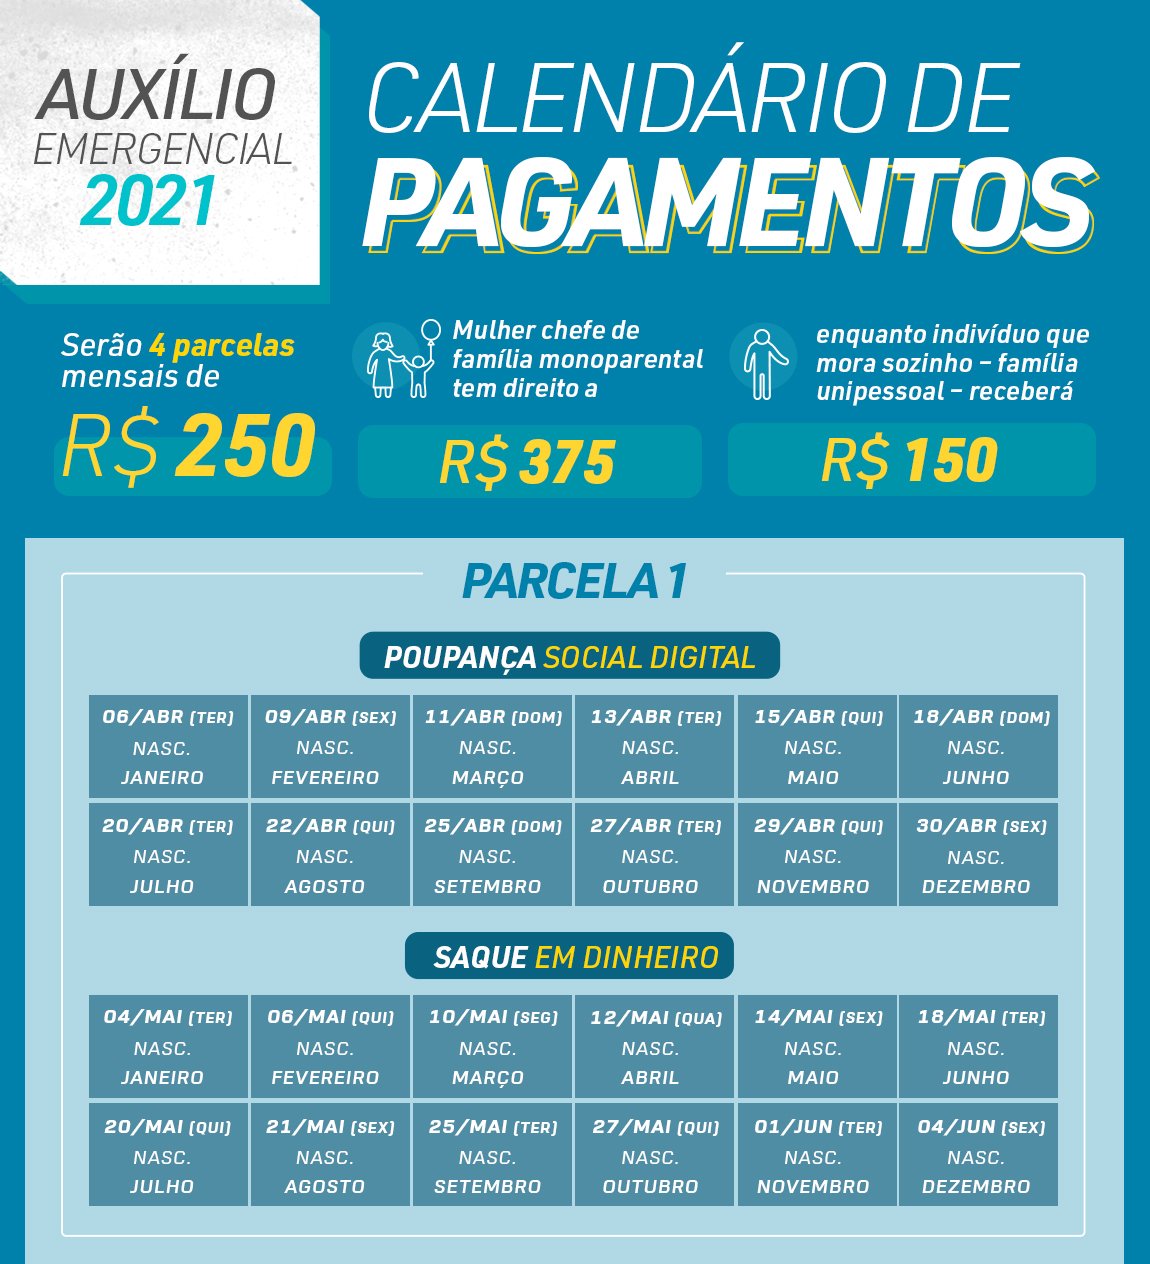 Dados sobre o auxílio emergencial de 2021 e datas de pagamento da primeira parcela. (Fonte: Agência Brasil / Reprodução)